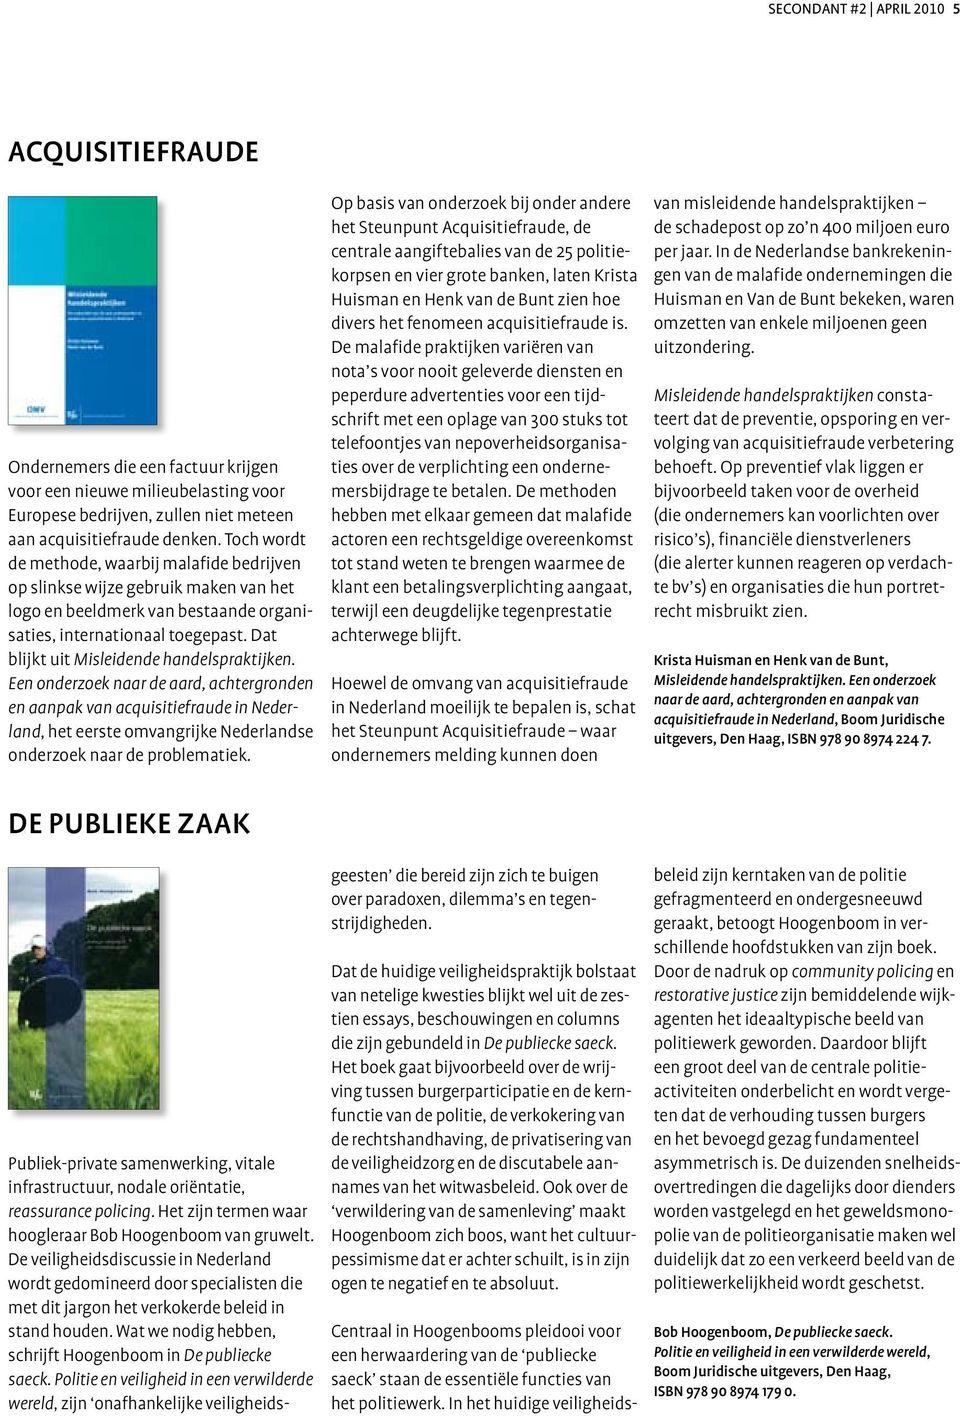 Dat blijkt uit Misleidende handelspraktijken. Een onderzoek naar de aard, achter gronden en aanpak van acquisitiefraude in Nederland, het eerste omvangrijke Nederlandse onderzoek naar de problematiek.